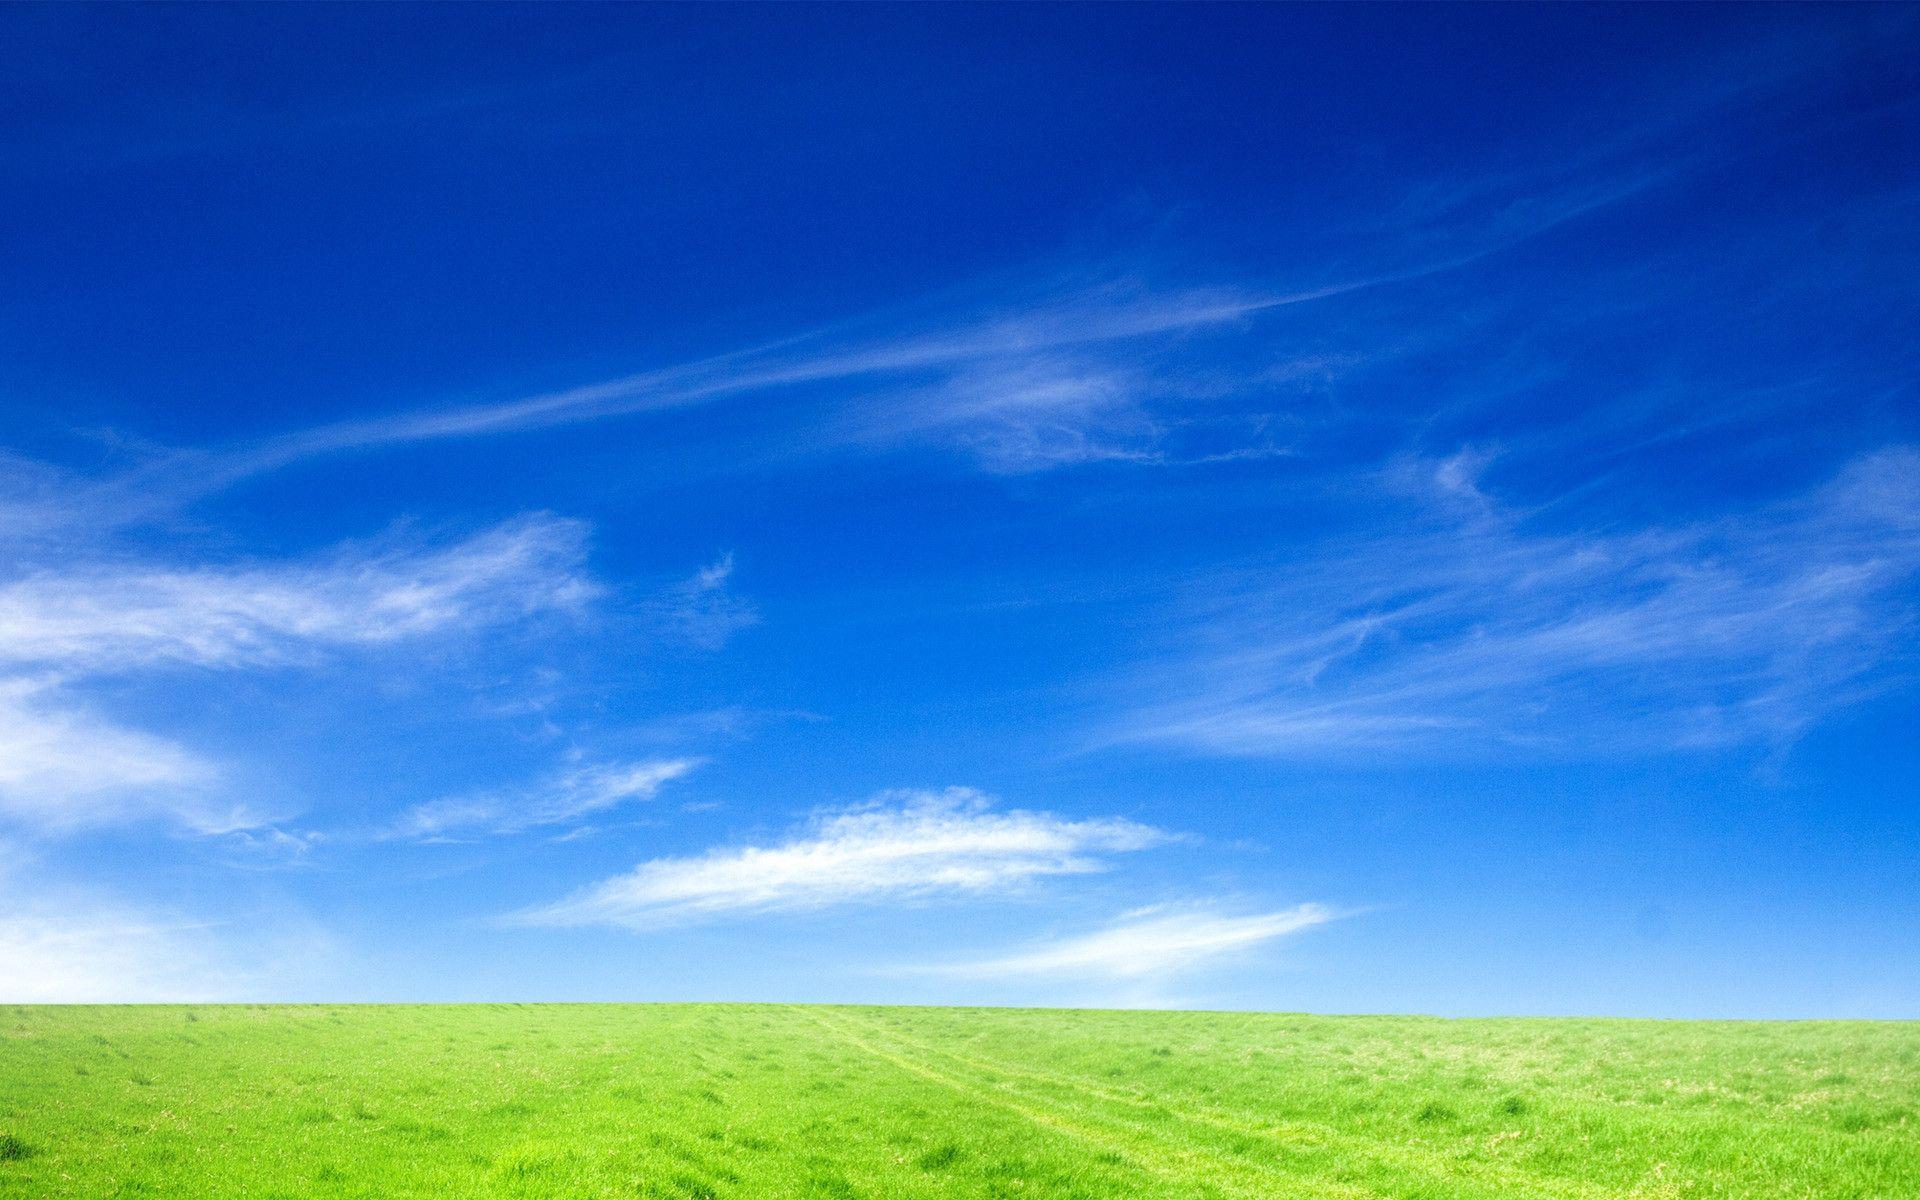 Tận hưởng vẻ đẹp của bầu trời xanh tươi với hình nền Blue Sky Wallpapers miễn phí cho máy tính. Khi nhìn vào hình nền này, bạn sẽ cảm nhận được sự trong trẻo, tươi mới của bầu trời, mang lại cảm giác thật sảng khoái.